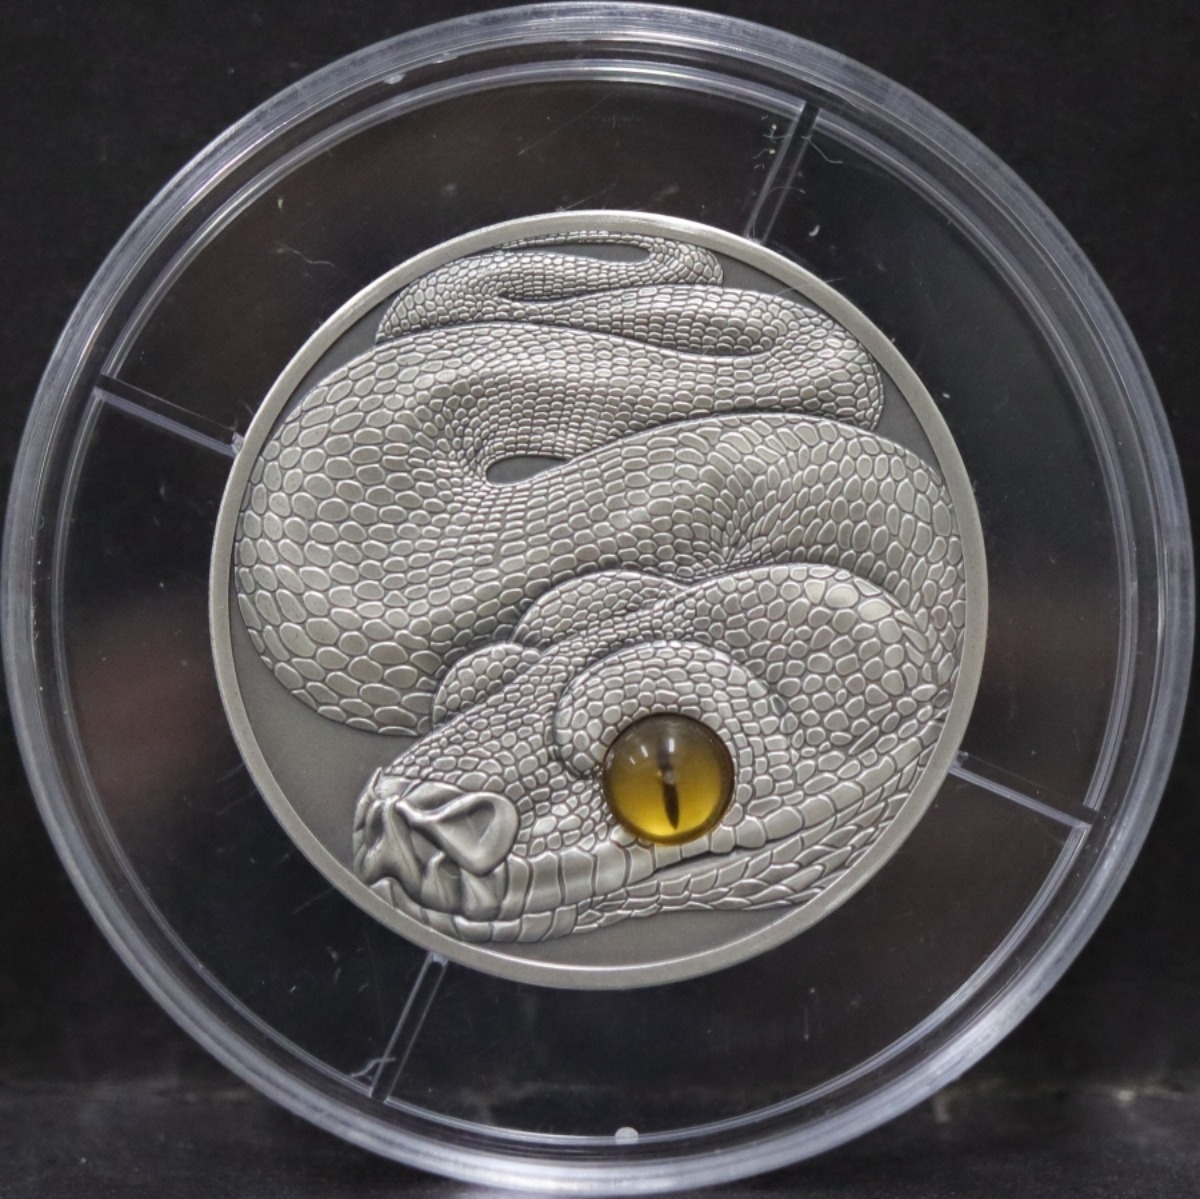 사모아 2013년 뱀의해 실제 눈 처럼 보이는 효과 (Glass eye) 삽입 엔틱 은화